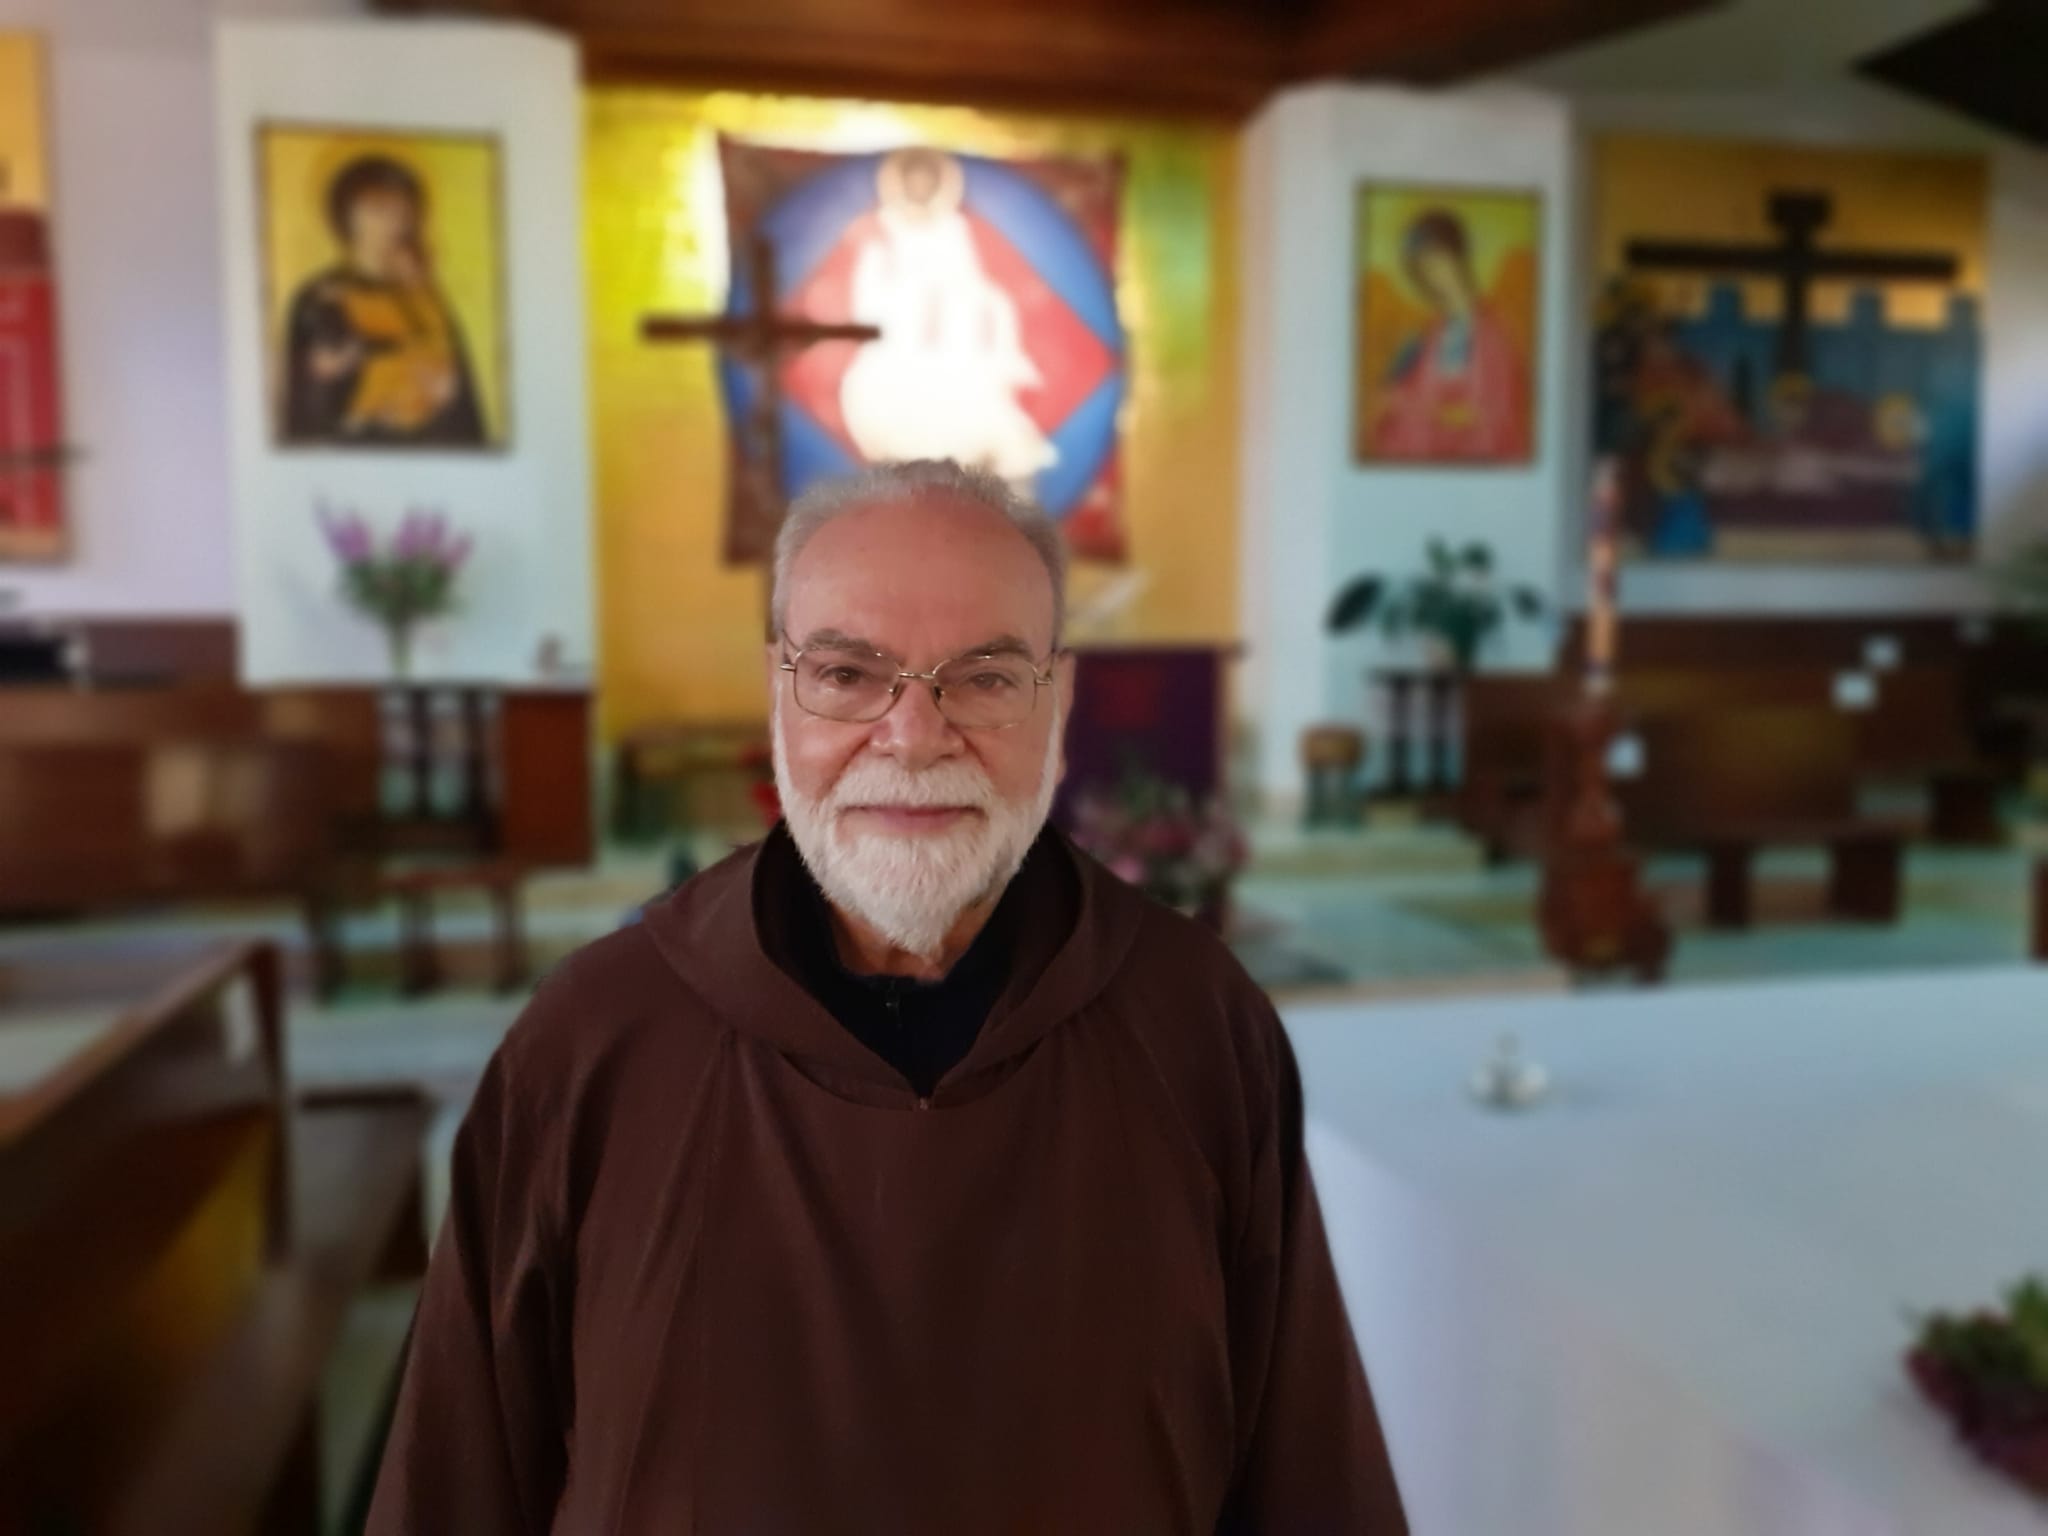 Caltanissetta, Padre Vincenzo Di Rocco celebra 50 anni di sacerdozio: una vita nell’umiltà del servizio